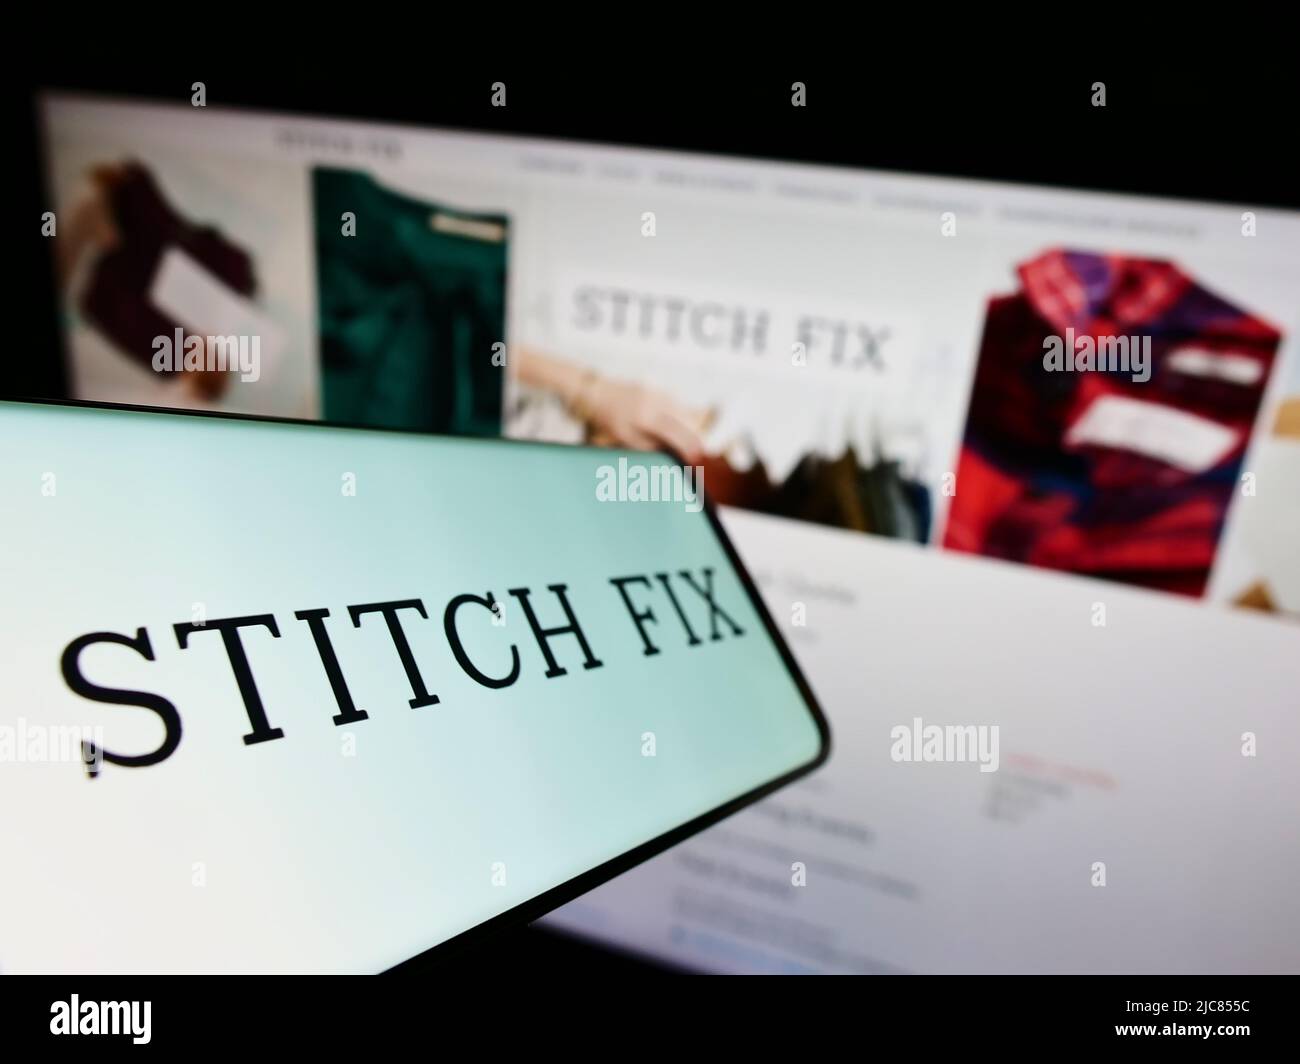 Smartphone con el logotipo de la empresa de estilos americana Stitch Fix Inc. En la pantalla frente al sitio web de la empresa. Enfoque en la parte central izquierda de la pantalla del teléfono. Foto de stock